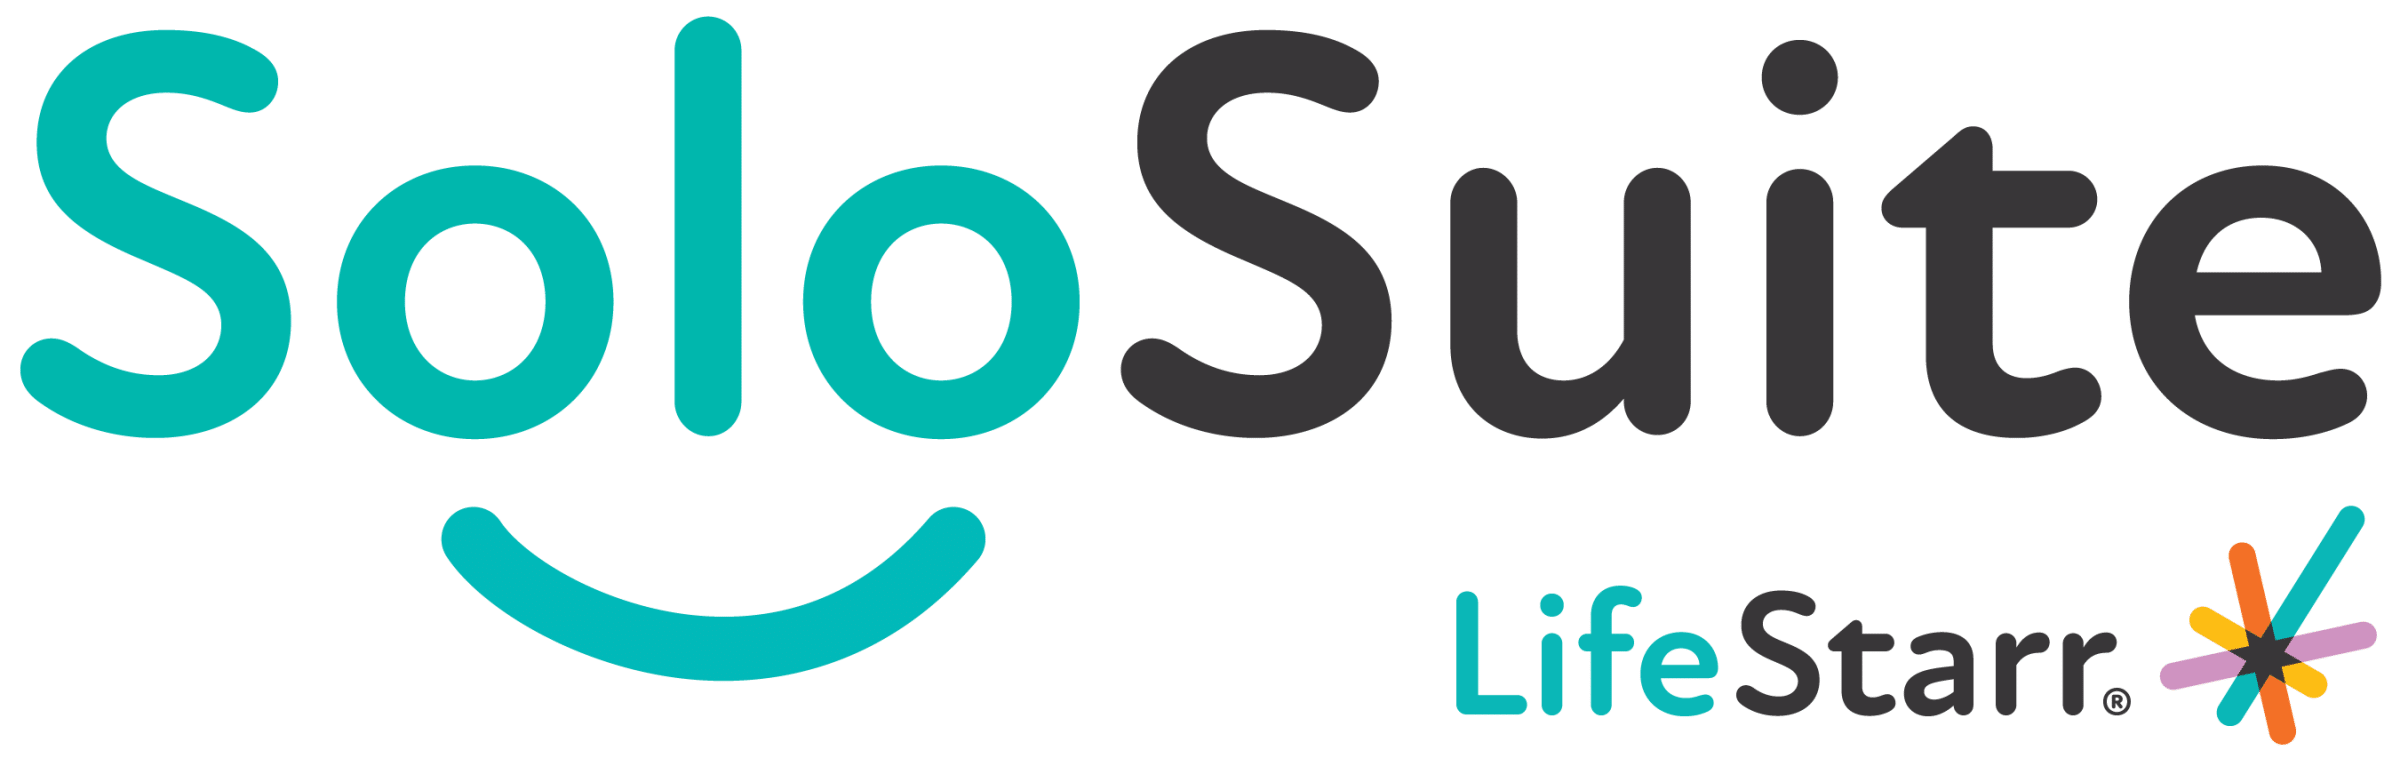 solosuite-logo